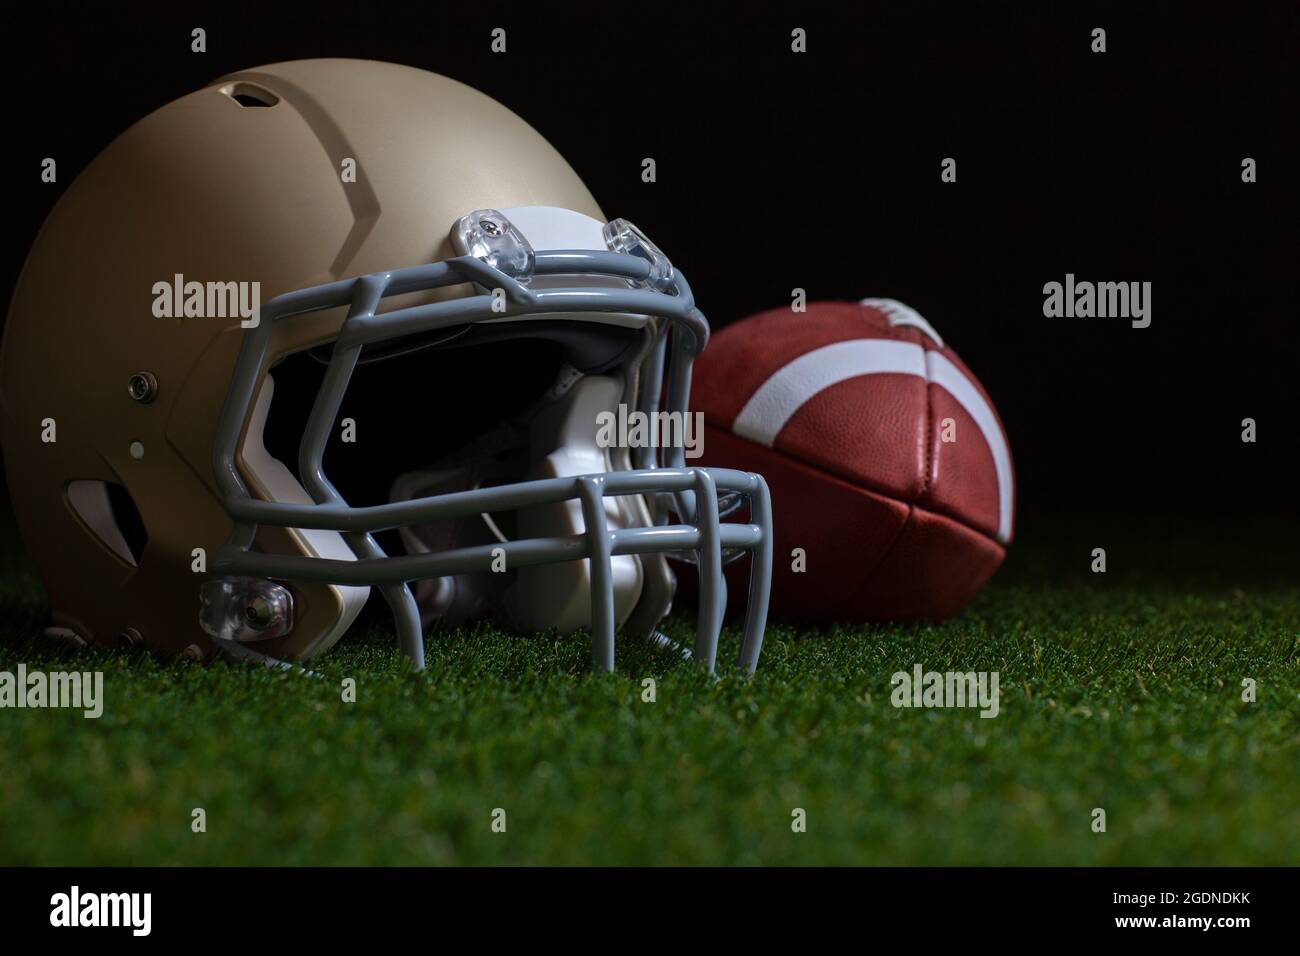 Mise au point sélective à faible angle du casque de football et d'or sur l'herbe avec fond sombre Banque D'Images